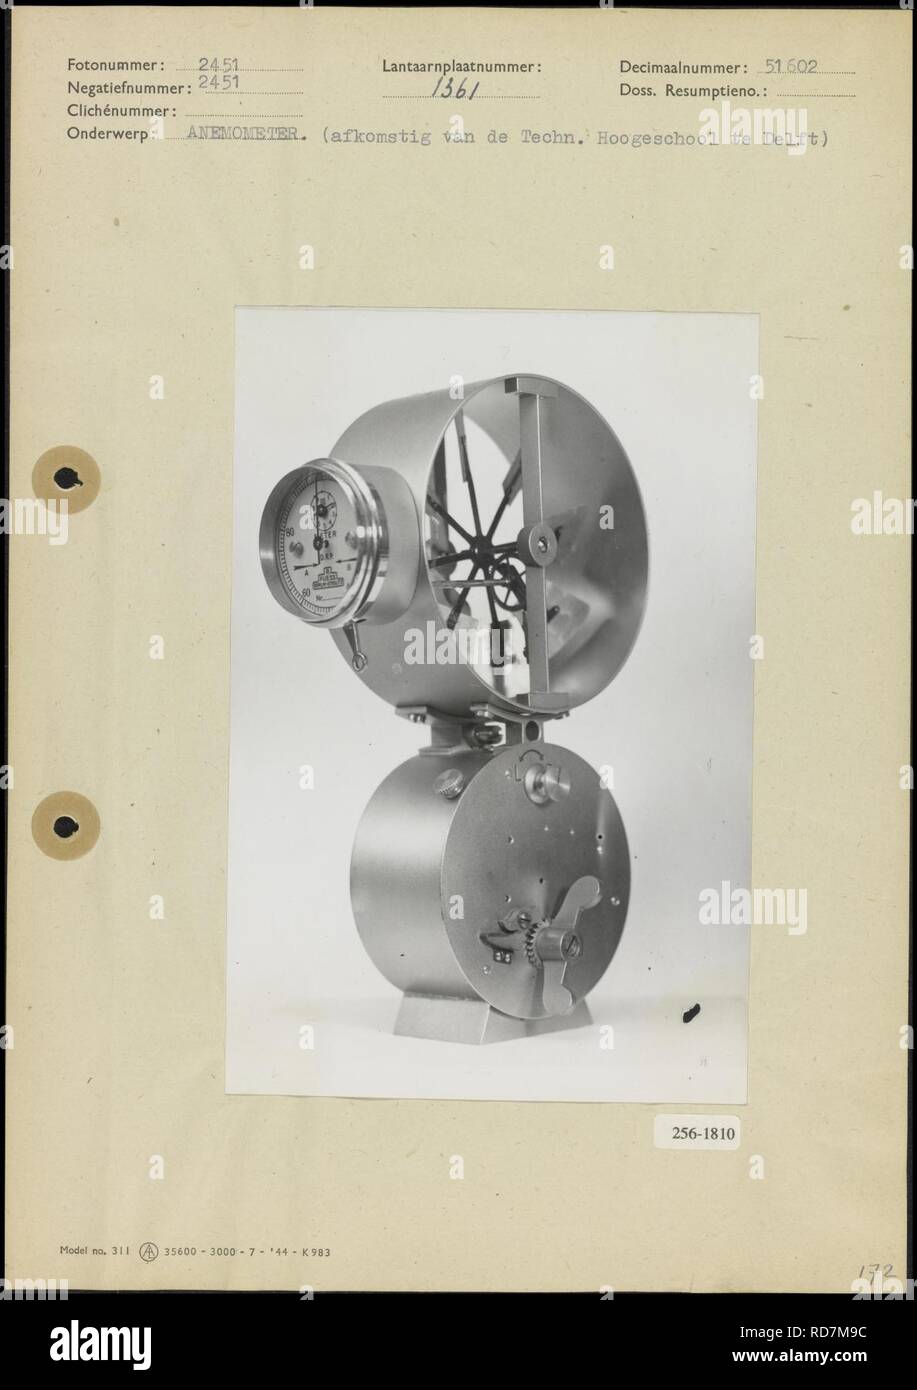 Anemometer, afkomstig van de Technische Hogeschool Delft, Bestanddeelnr 256-1810. Stock Photo